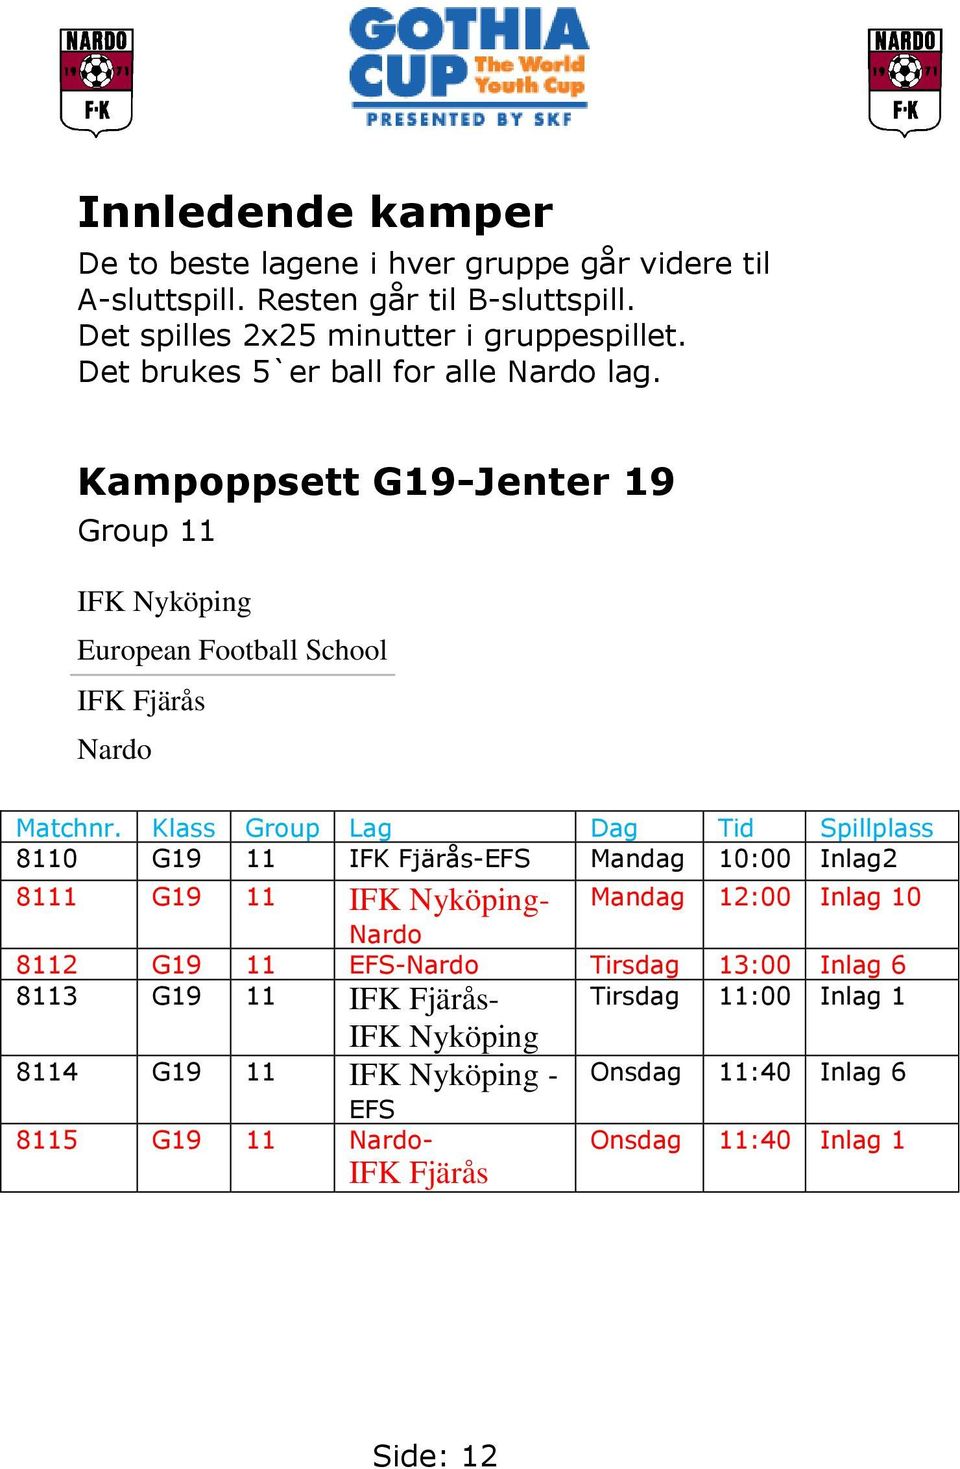 Klass Group Lag Dag Tid Spillplass 8110 G19 11 IFK Fjärås-EFS Mandag 10:00 Inlag2 8111 G19 11 IFK Nyköping- Mandag 12:00 Inlag 10 Nardo 8112 G19 11 EFS-Nardo